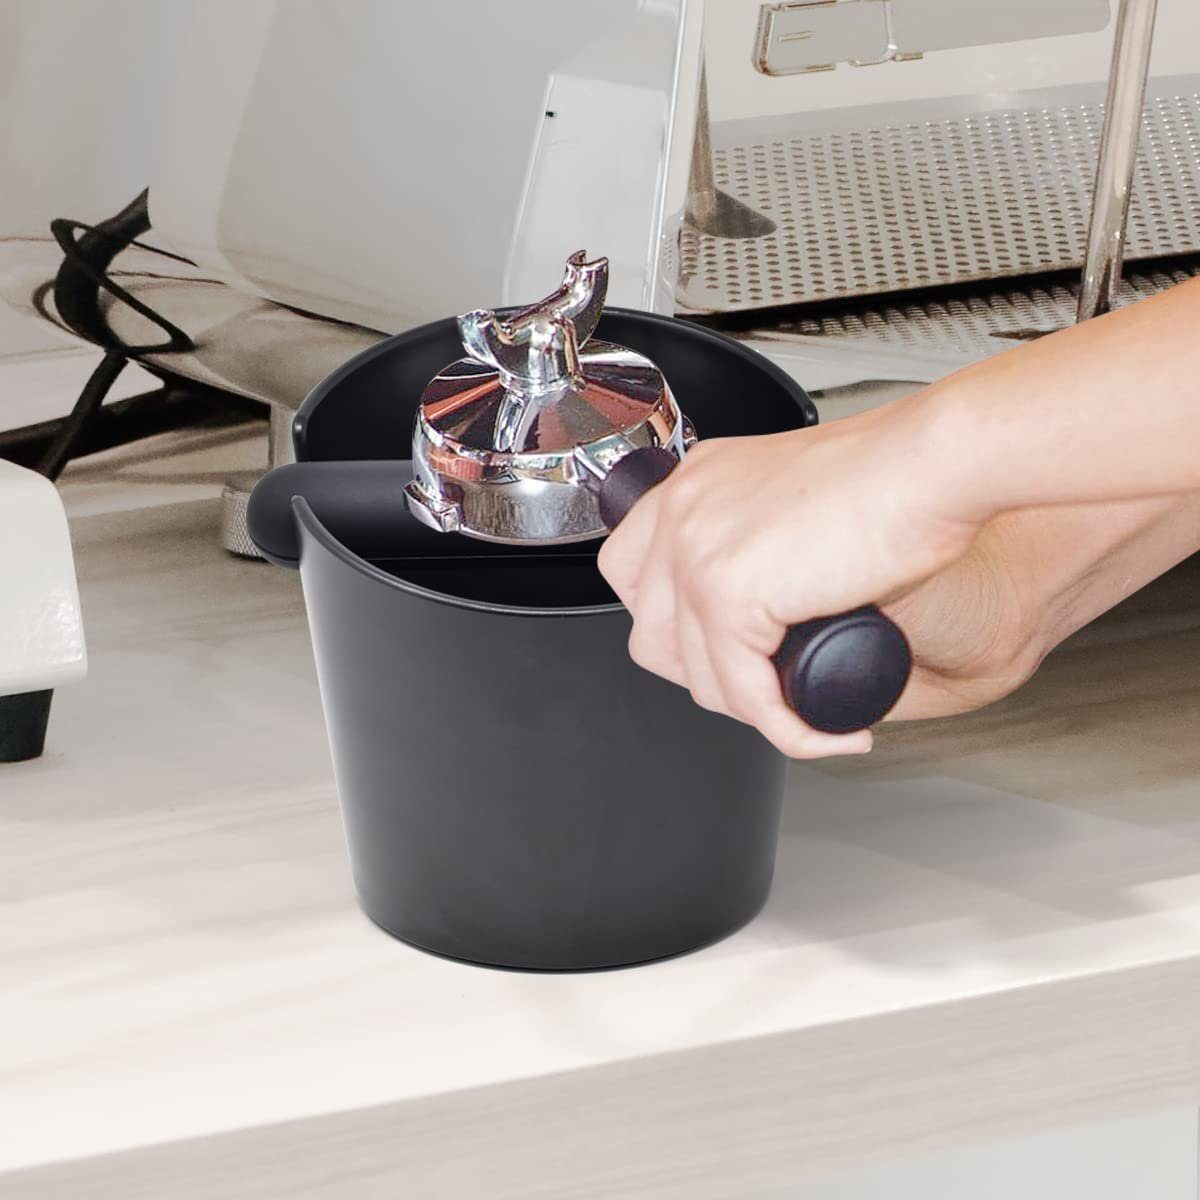 Knock JOEJI’S für KITCHEN Abklopfbehälter Kaffeeservice Zubehör Box Maschinen Siebträger Espresso